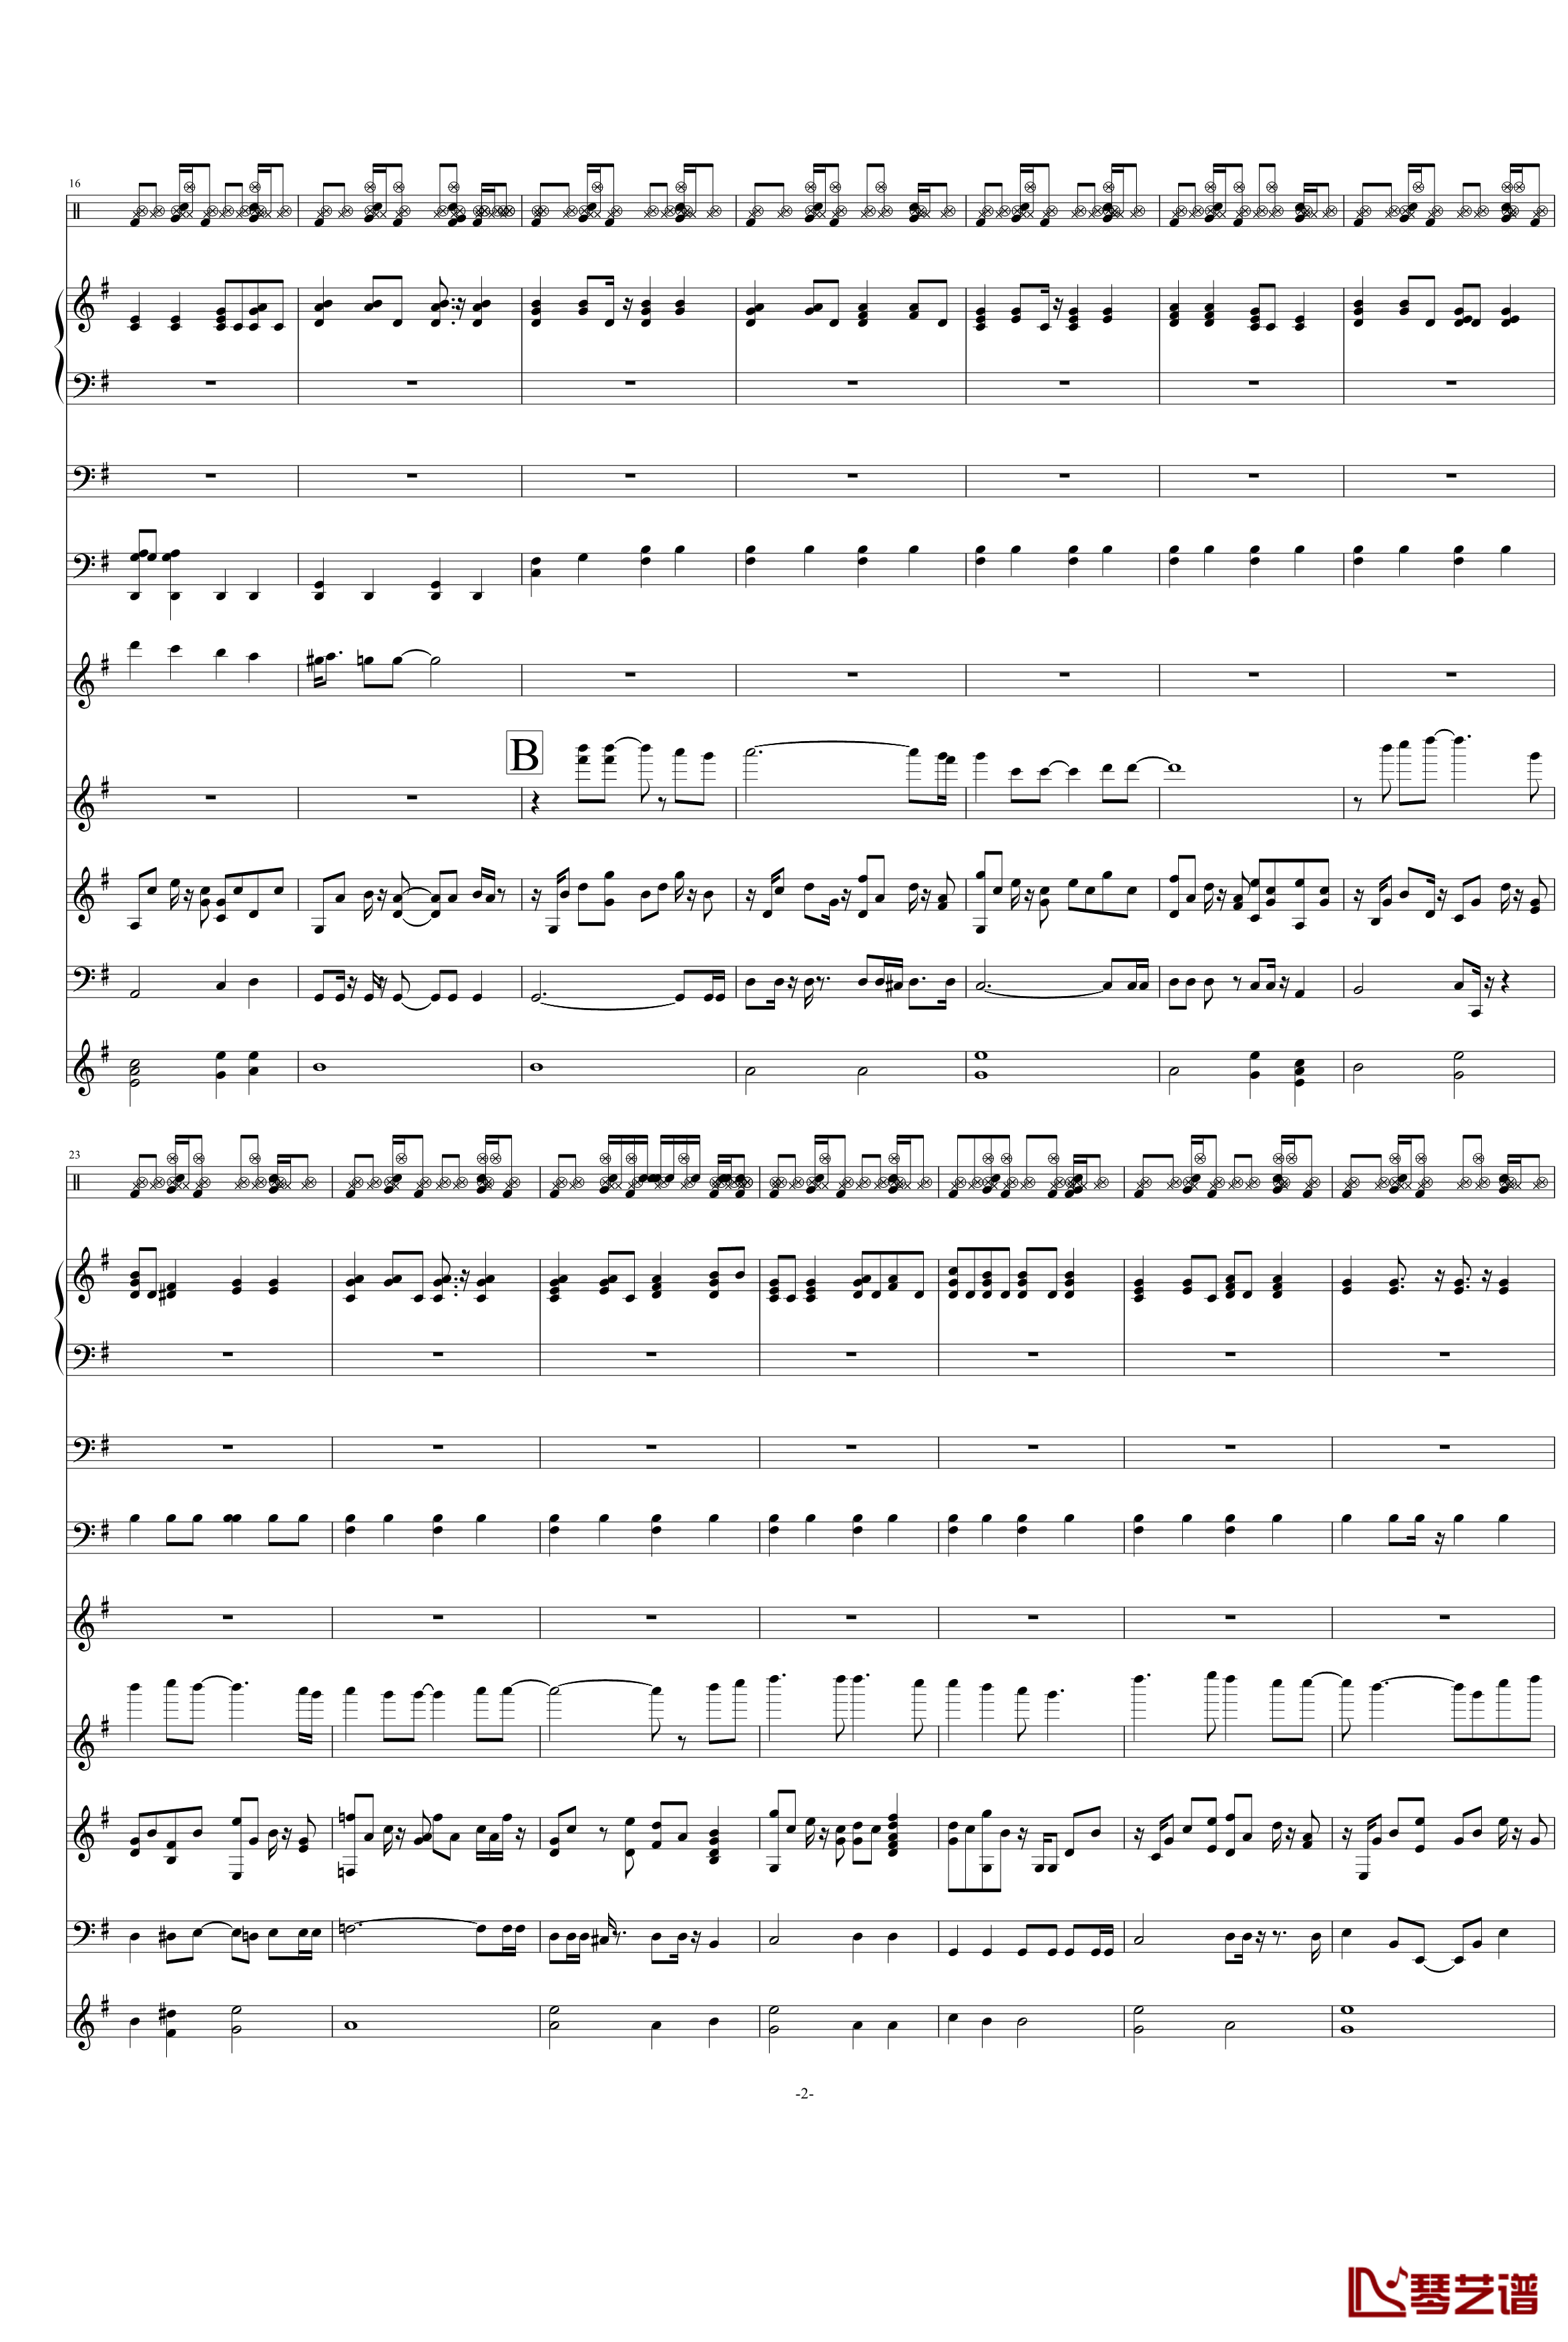 天竺星空钢琴谱-VST重新修改-swenl2